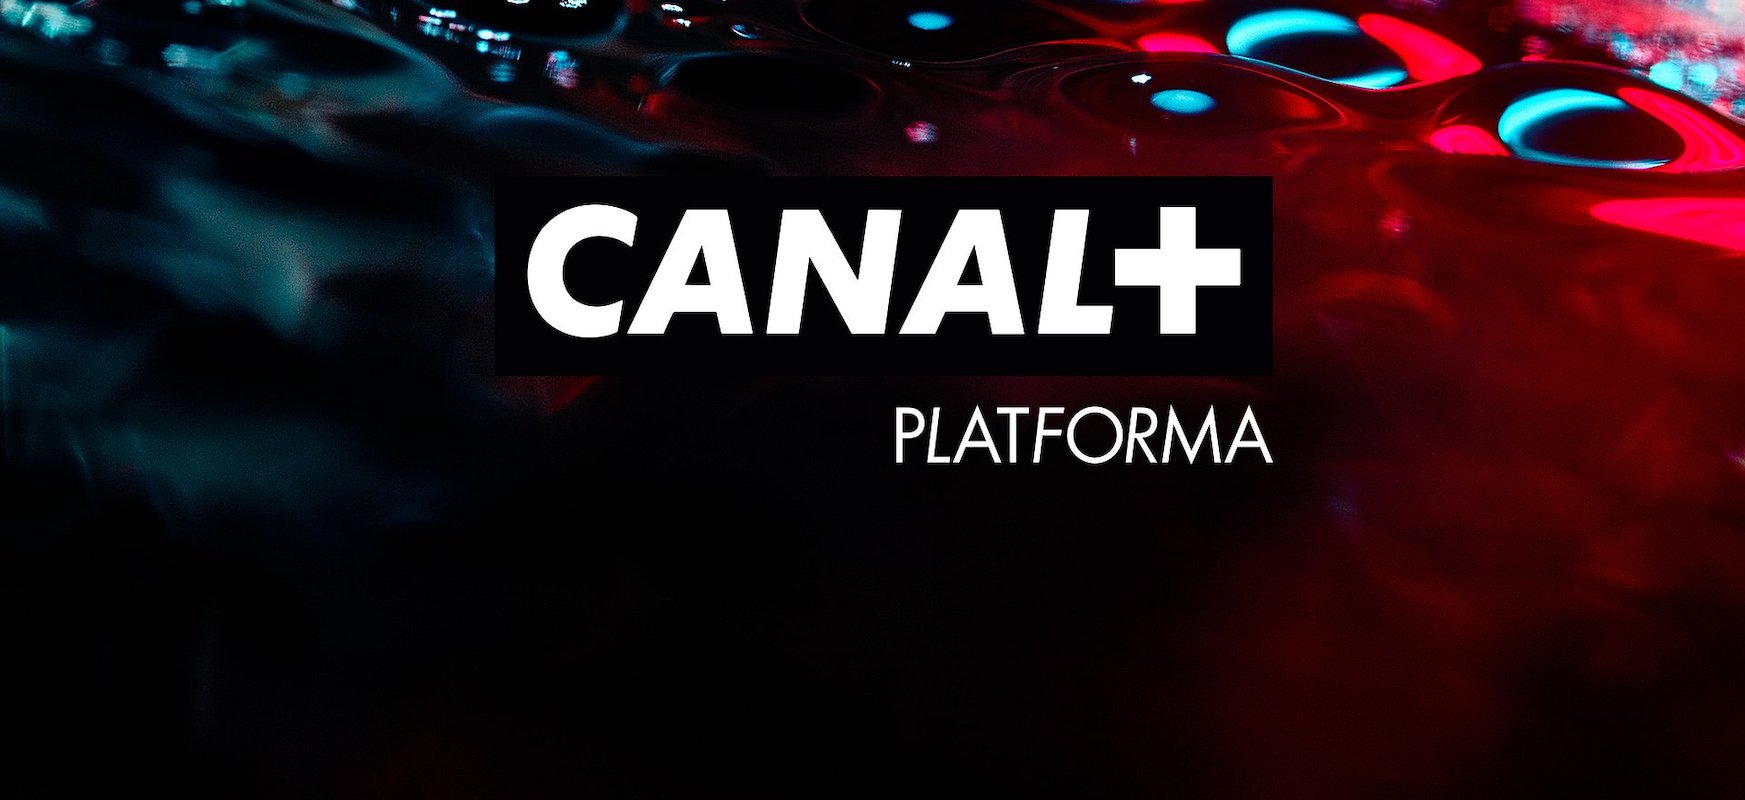 Canal +-ek bideo berria jarri du abian eskaera zerbitzuan. Netflix eta kable bidezko telebista klasikoentzako lehia da